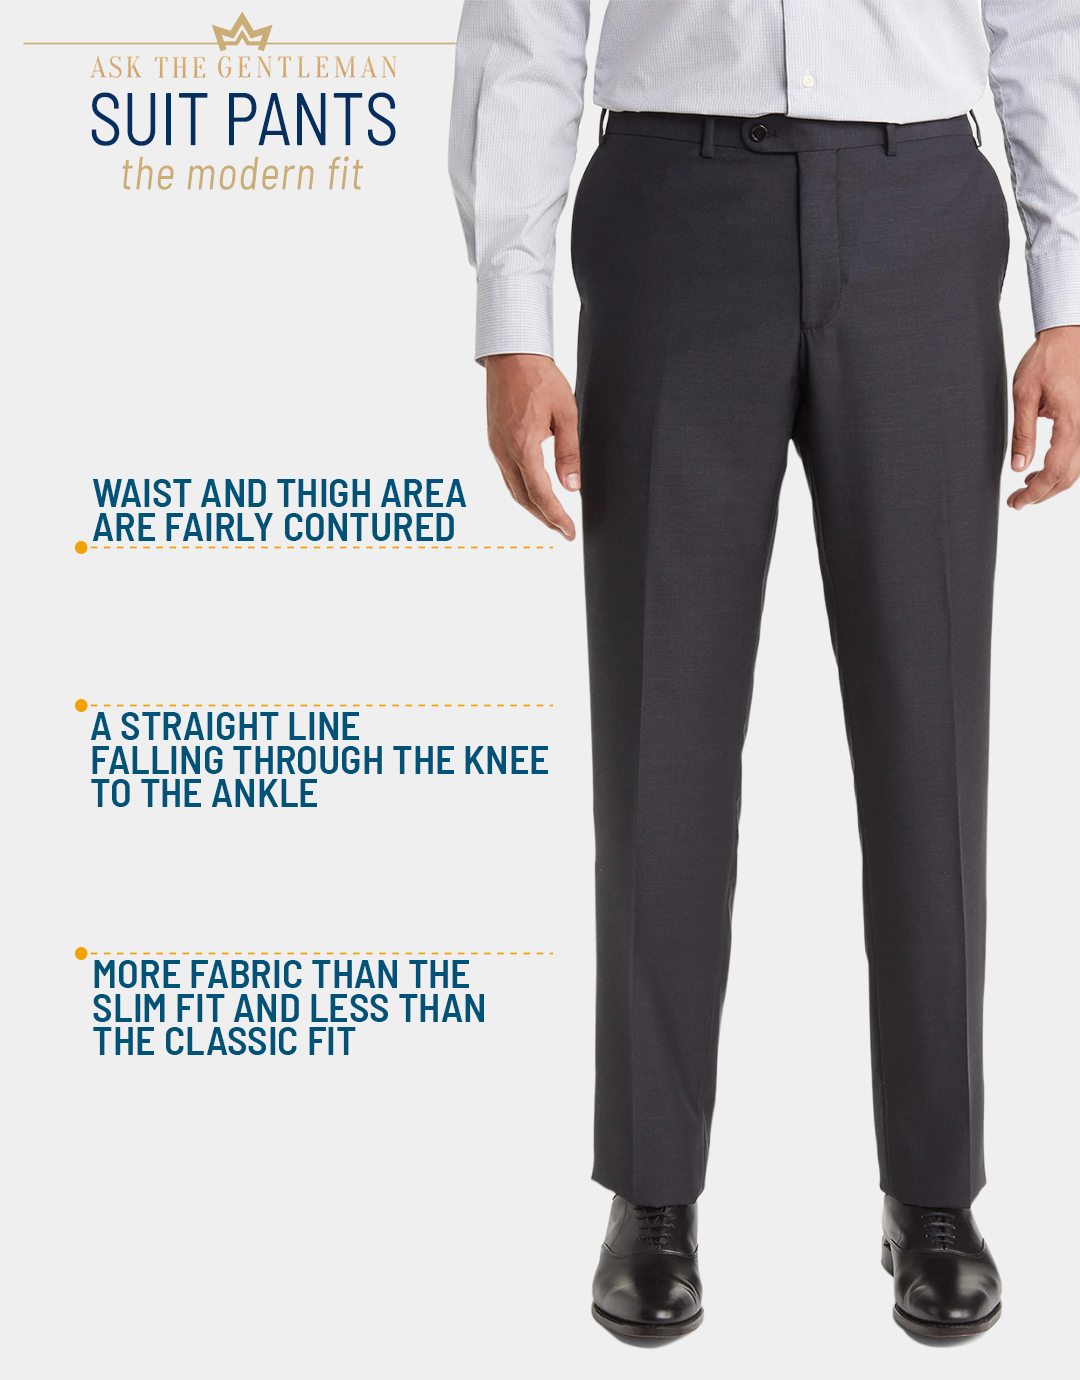 What is a modern fit suit pants cut